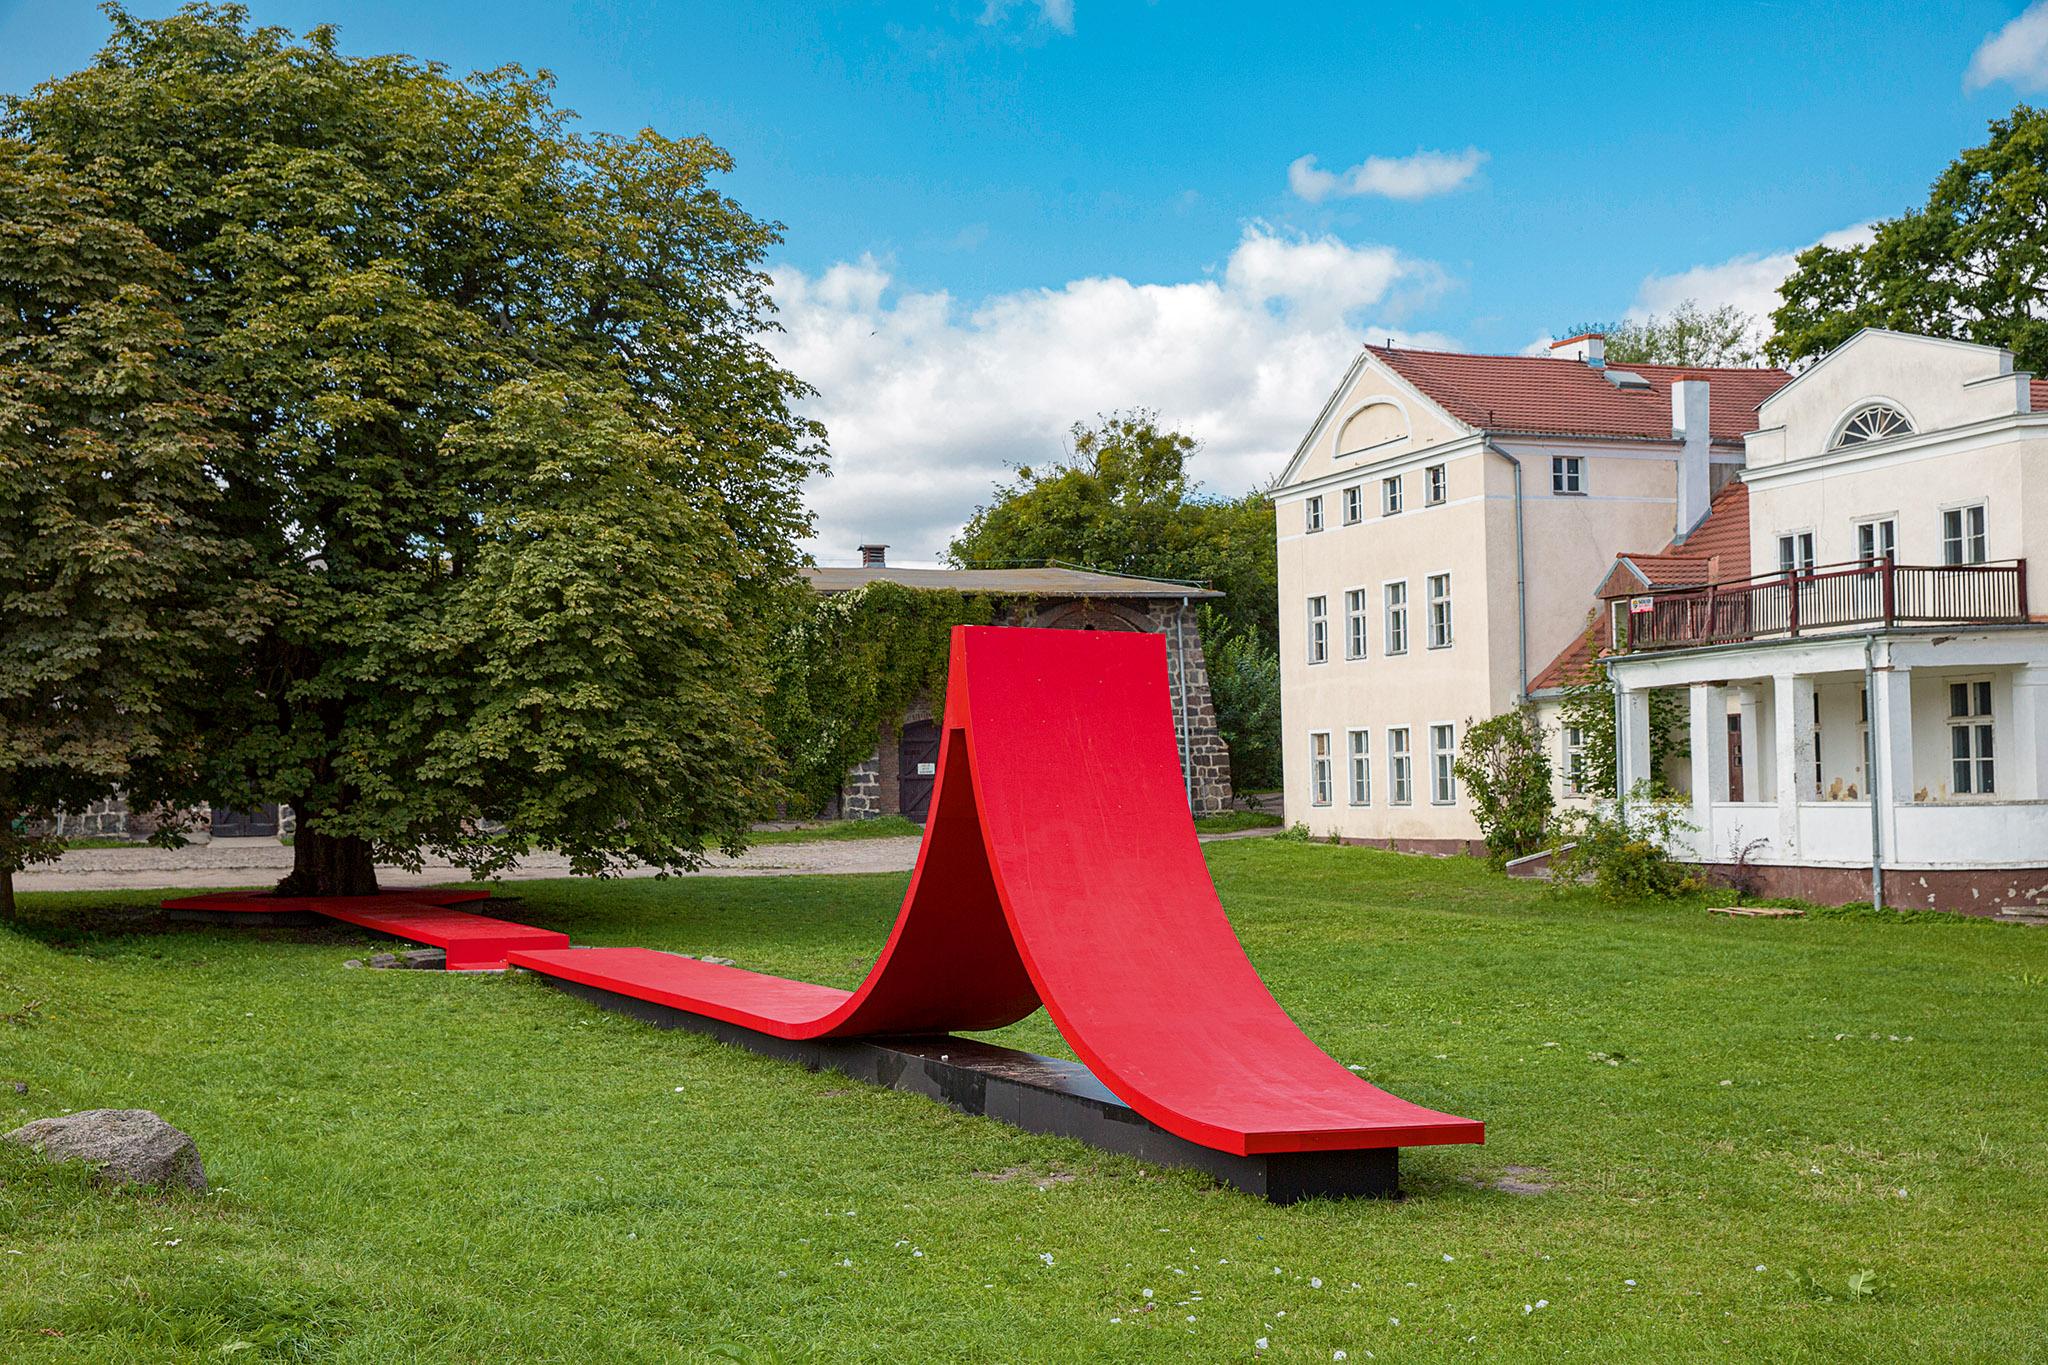  Ława w parku Kolibki autorstwa Filipa Kozarskiego, Gdynia. (Fot. Rafał Kołsut/Traffic Design)